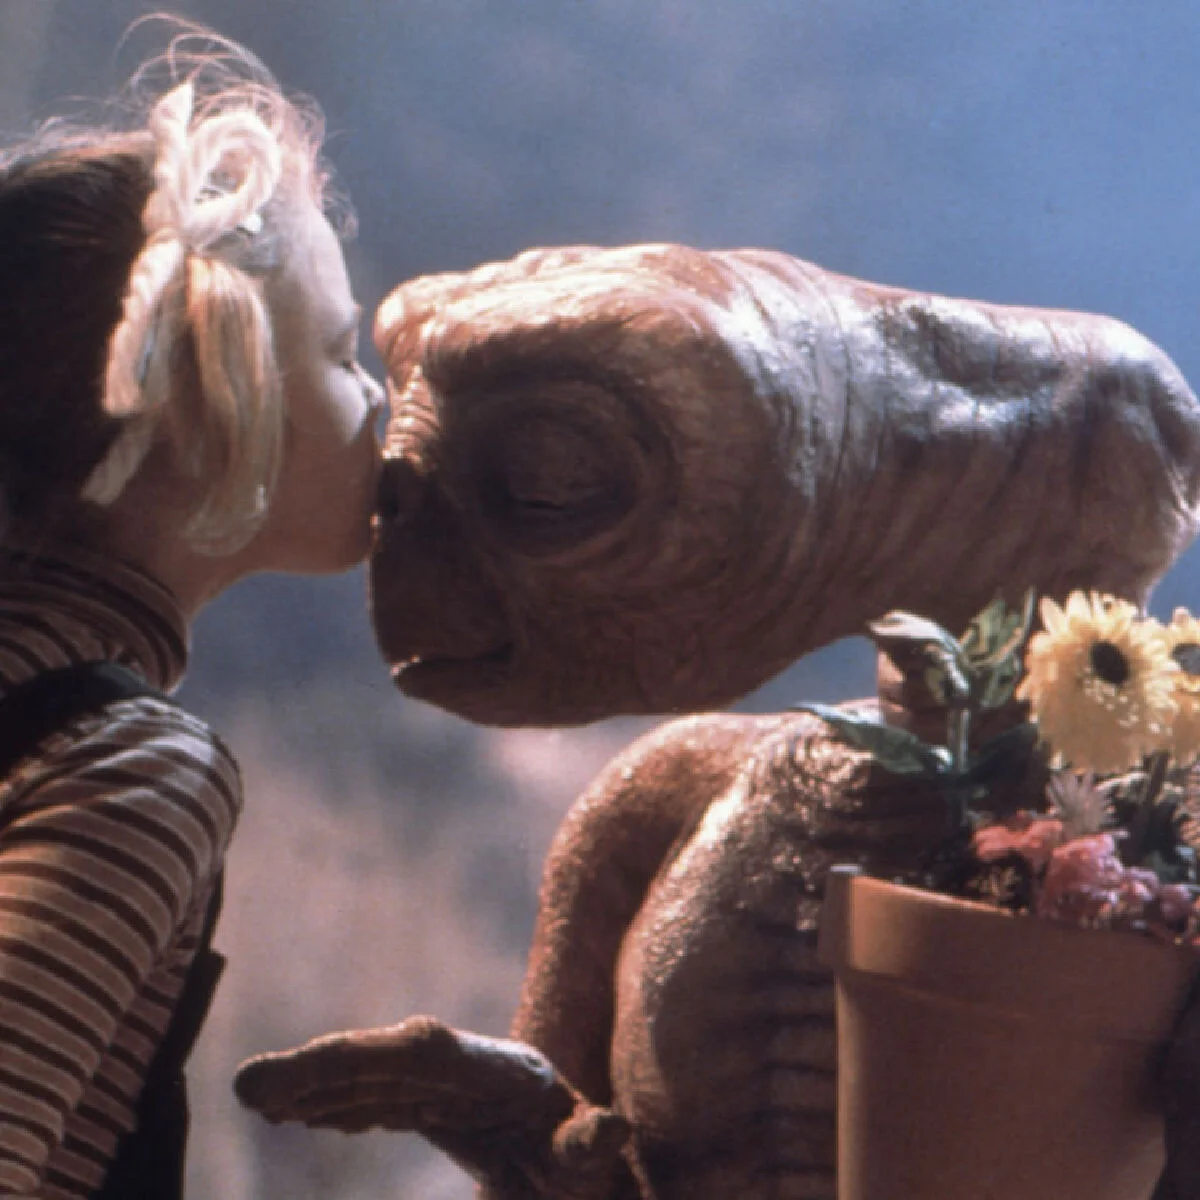 「E.T.の存在を信じていた」。ドリュー・バリモア、『E.T.』のキャストと撮影秘話を語る